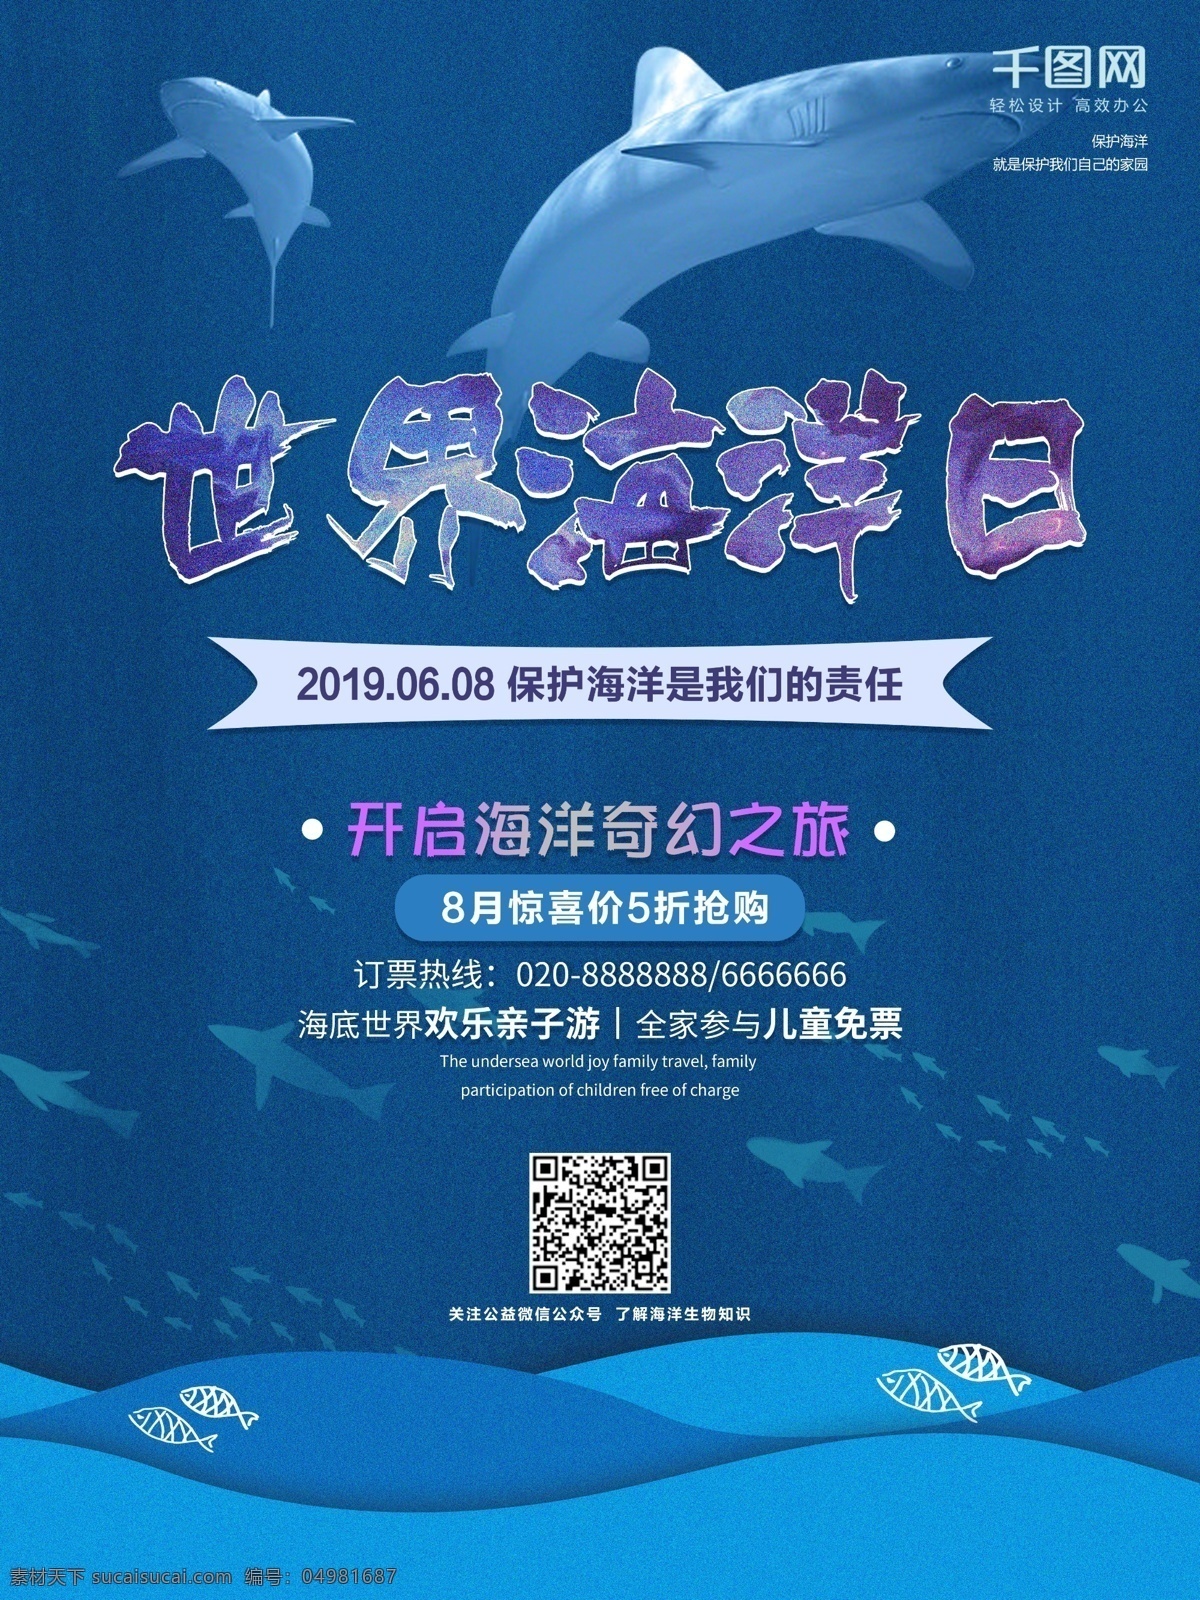 蓝色 世界 海洋 日 商业 海报 世界海洋日 海洋保护 环境保护 旅游海报 海底世界 海底旅游